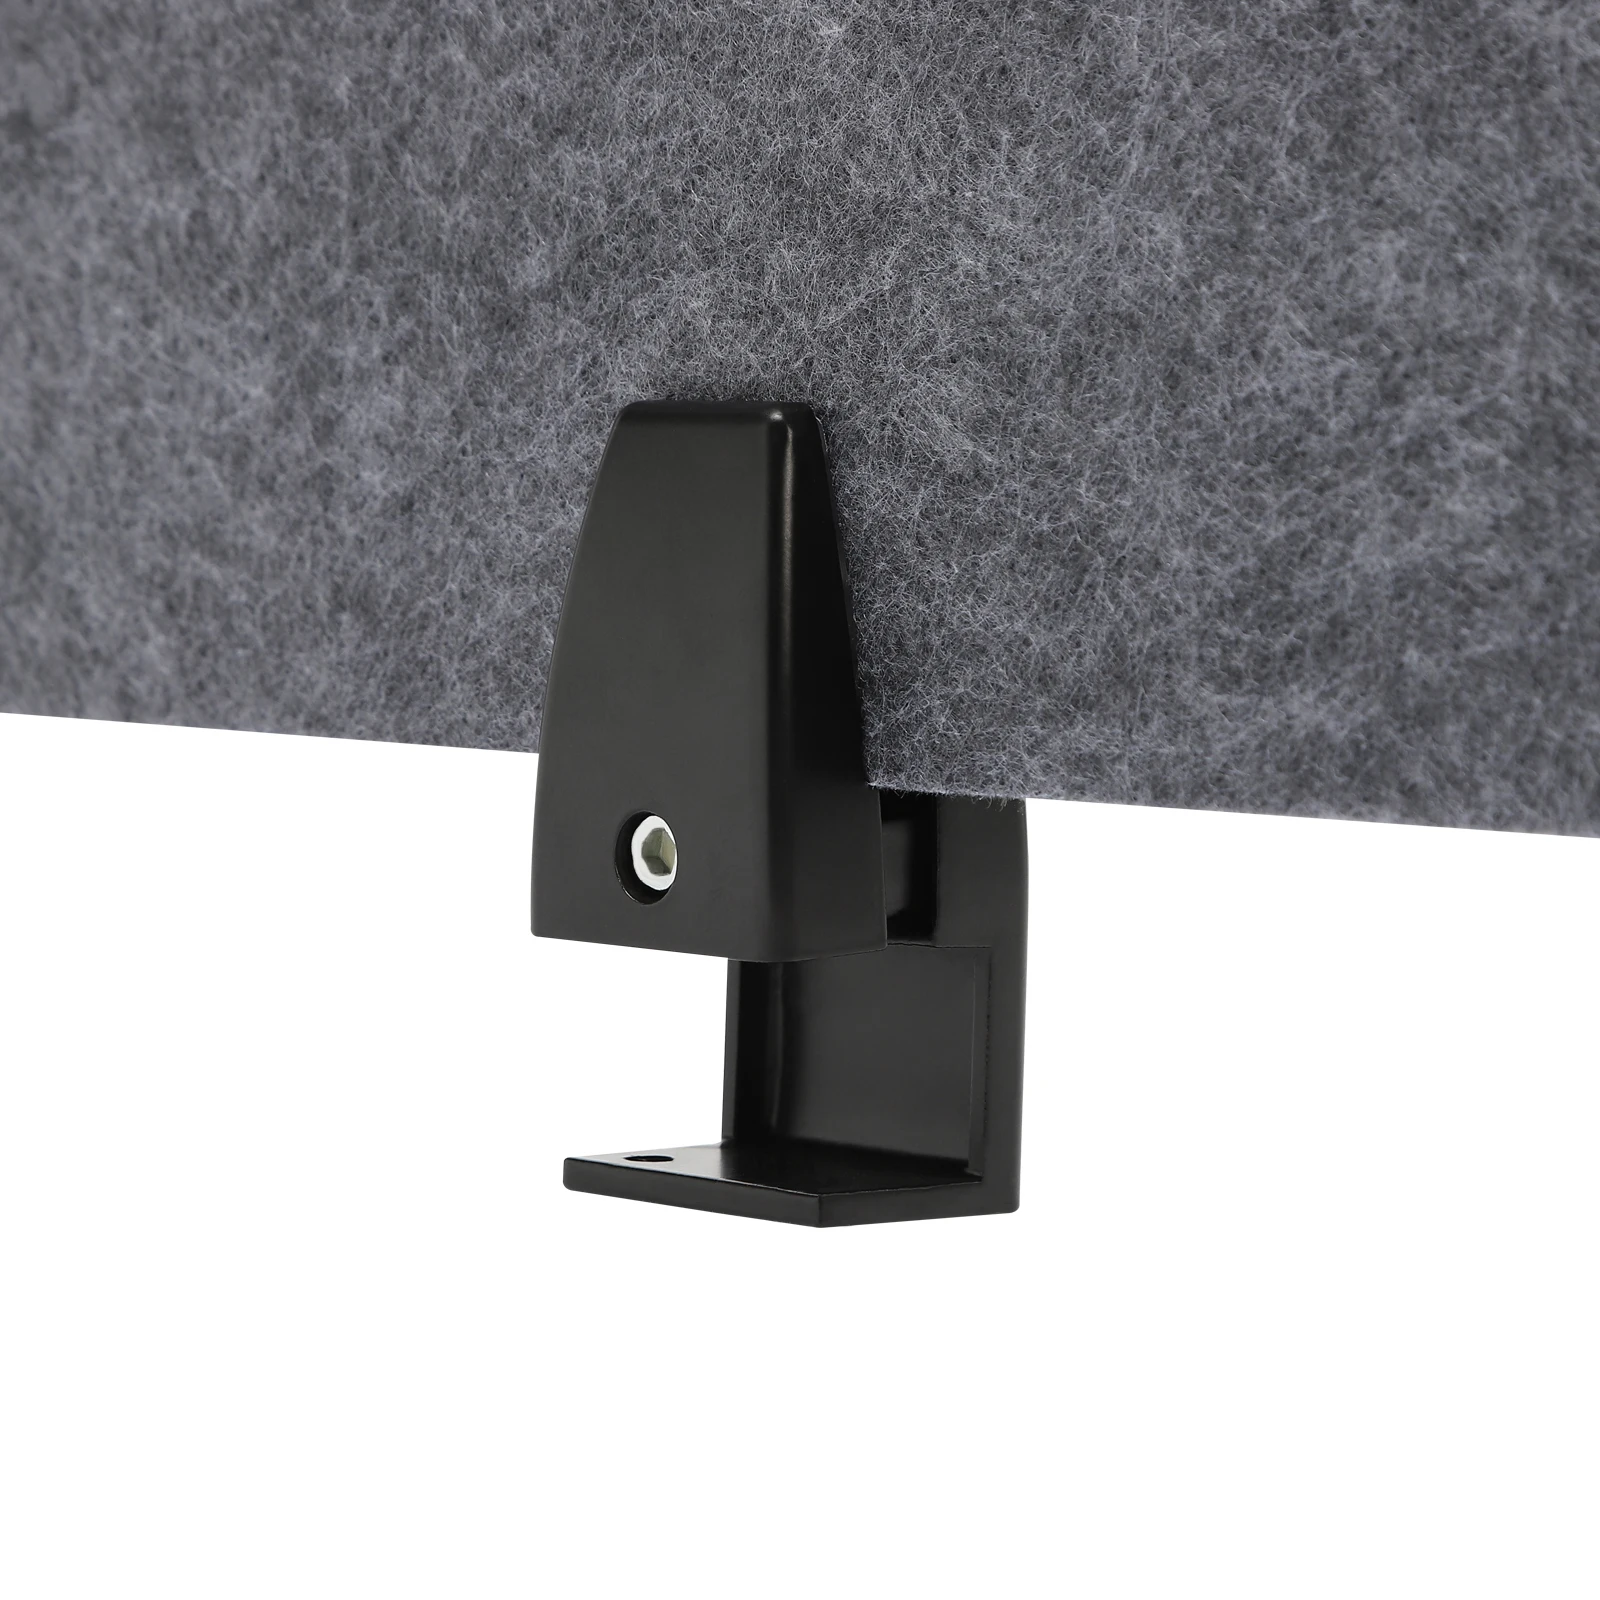 Магазин Stand Up Desk Store переориентирует необработанную акустическую панель-перегородку, установленную на рабочем столе, для уменьшения шума и визуальных отвлекающих факторов. Изображение 3